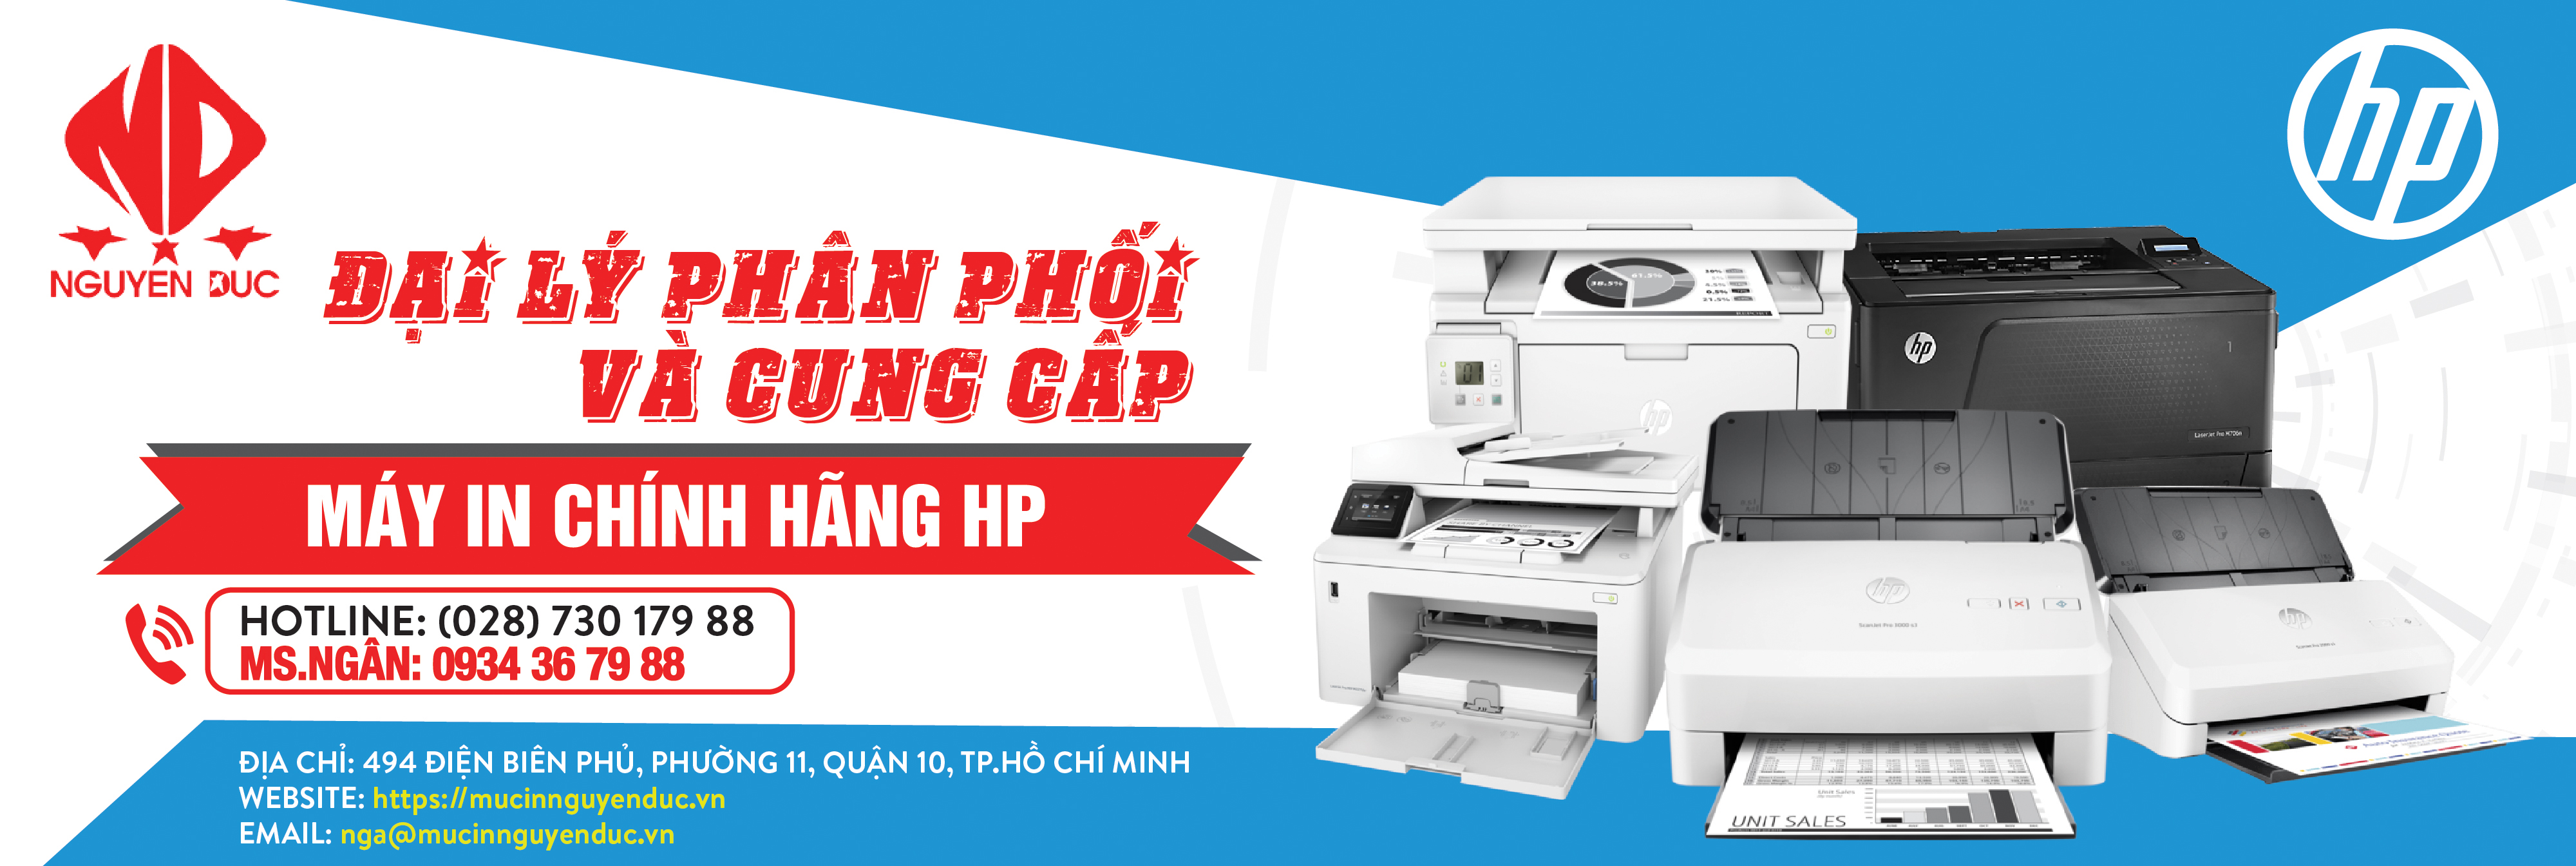 Đại lý phân phối máy Scan HP ScanJet Pro 5000 s5 (6FW09A) Chính hãng, giao hàng và lắp đặt tại Quận 1, Thành Phố Hồ Chí Minh